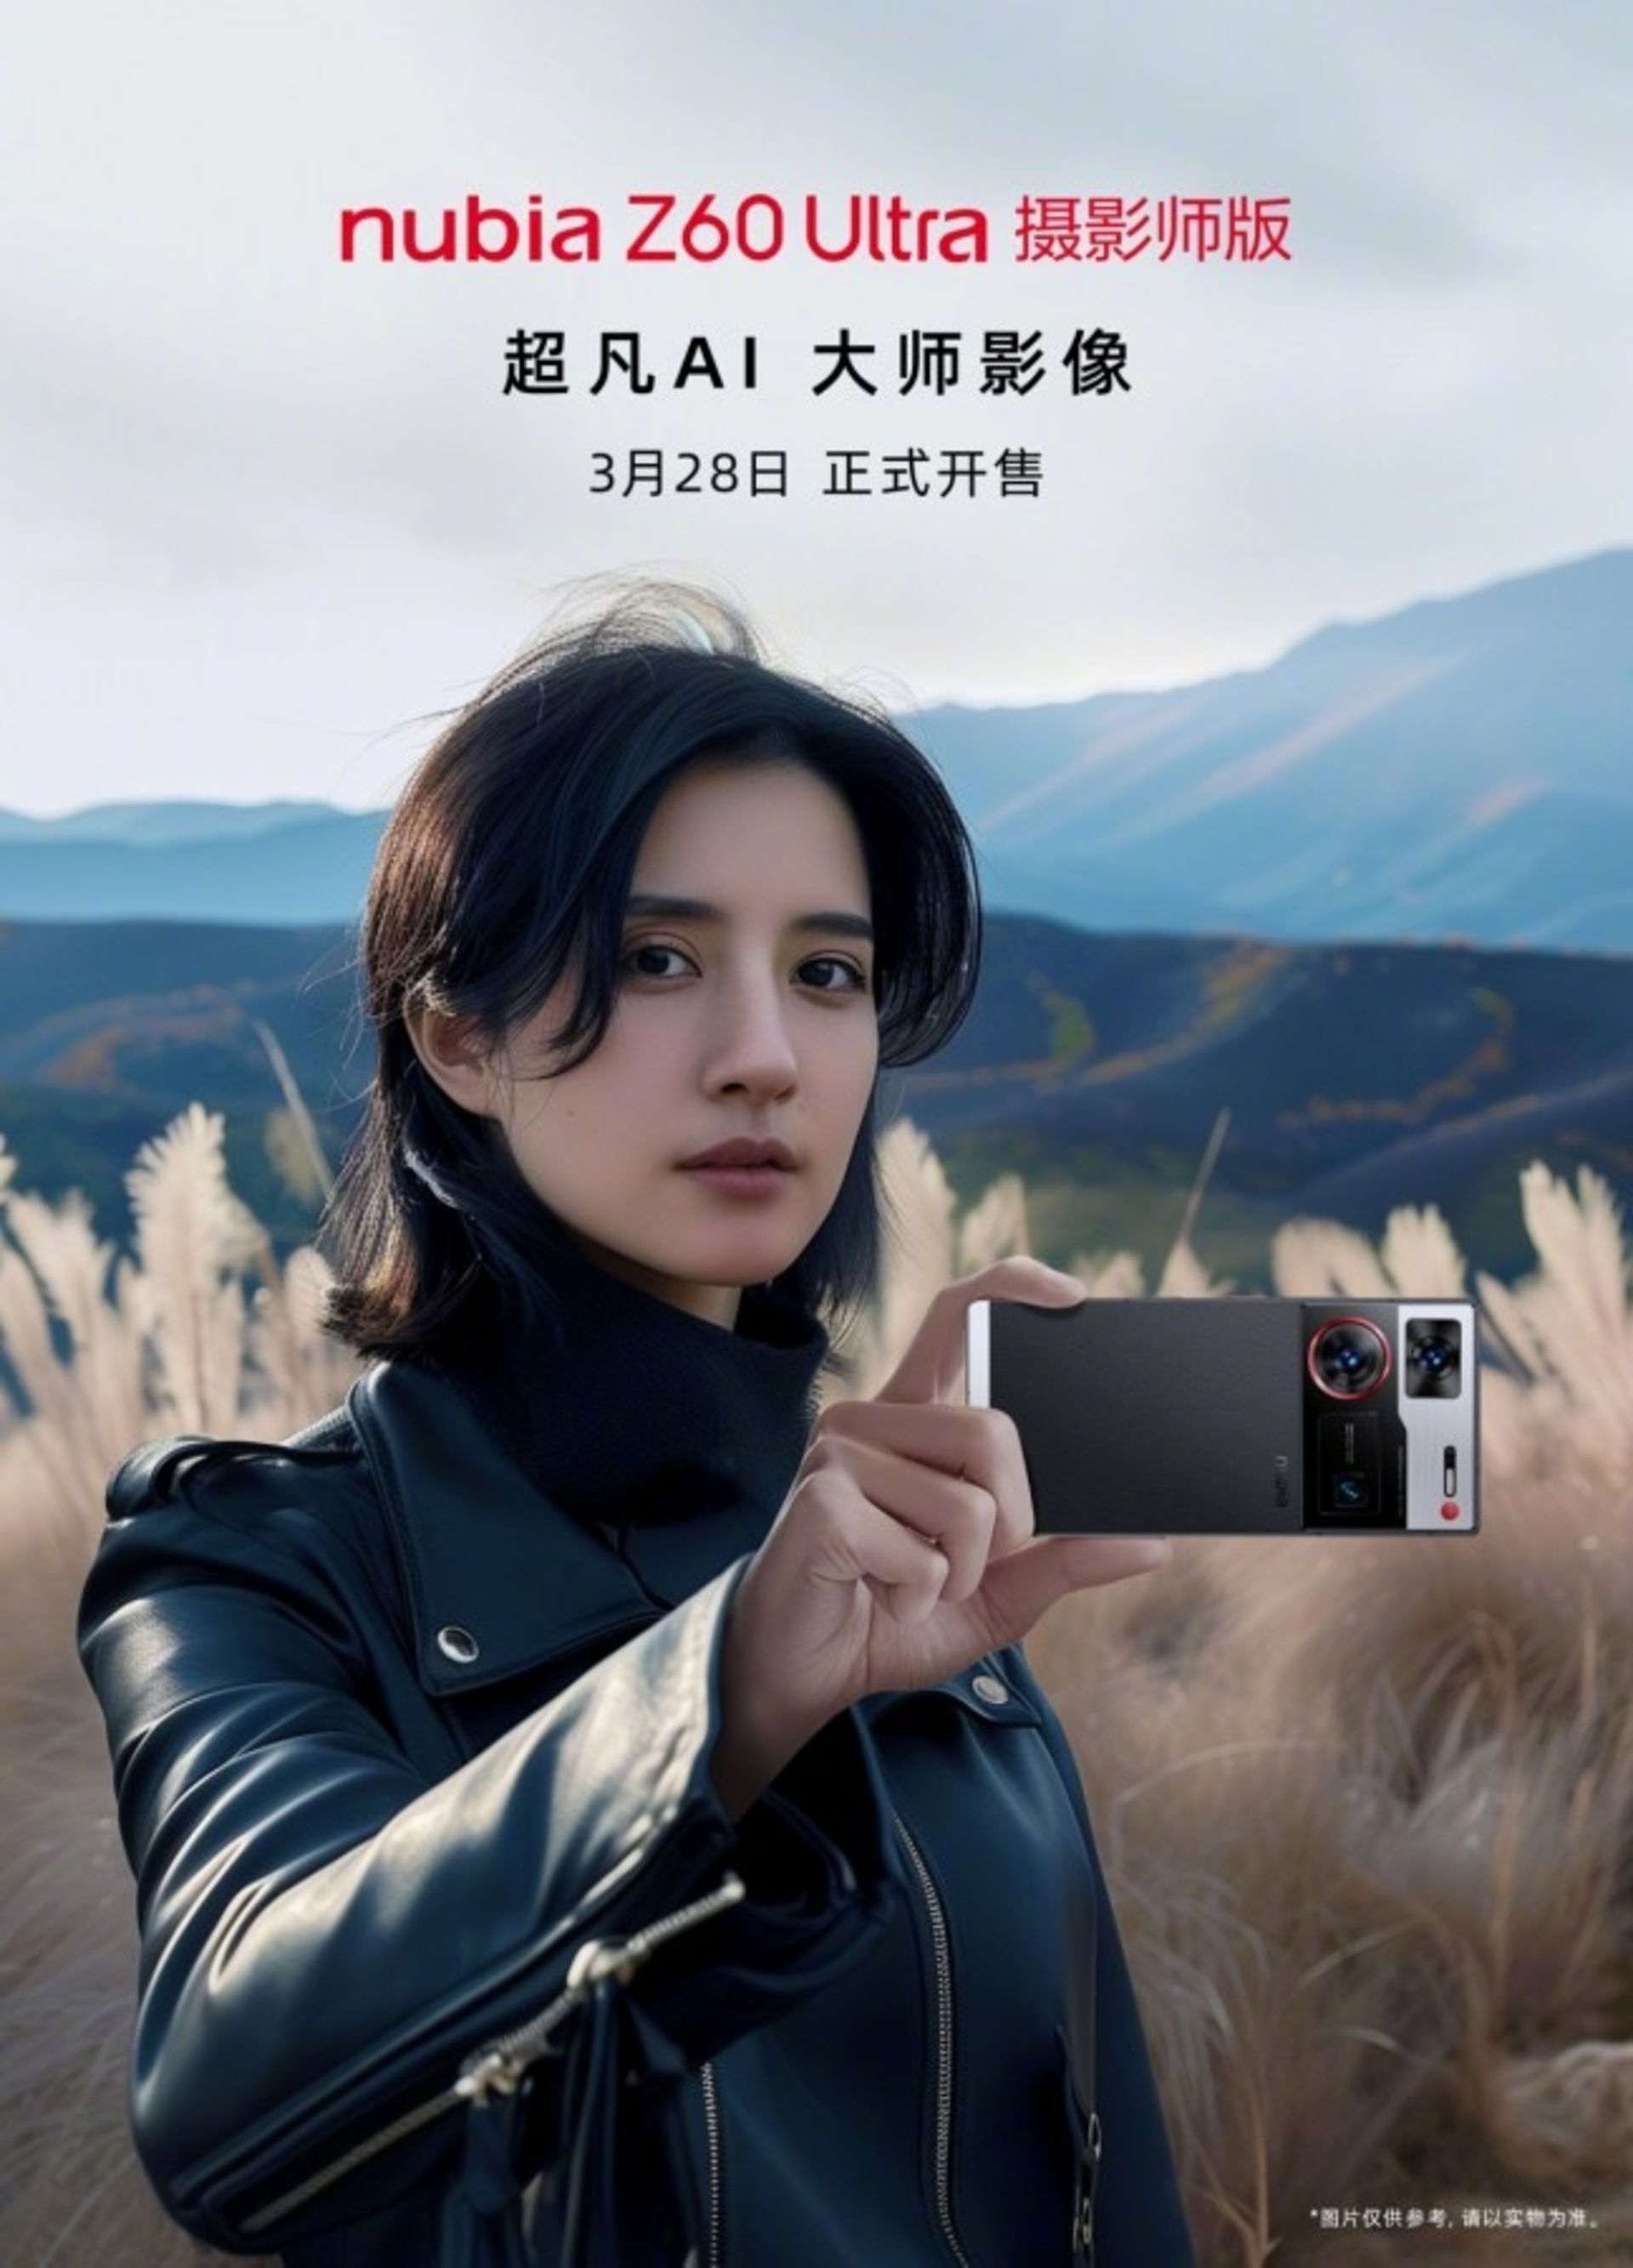 پنل پشتی گوشی نوبیا Z60 Ultra Photography Edition در دستان یک شخص